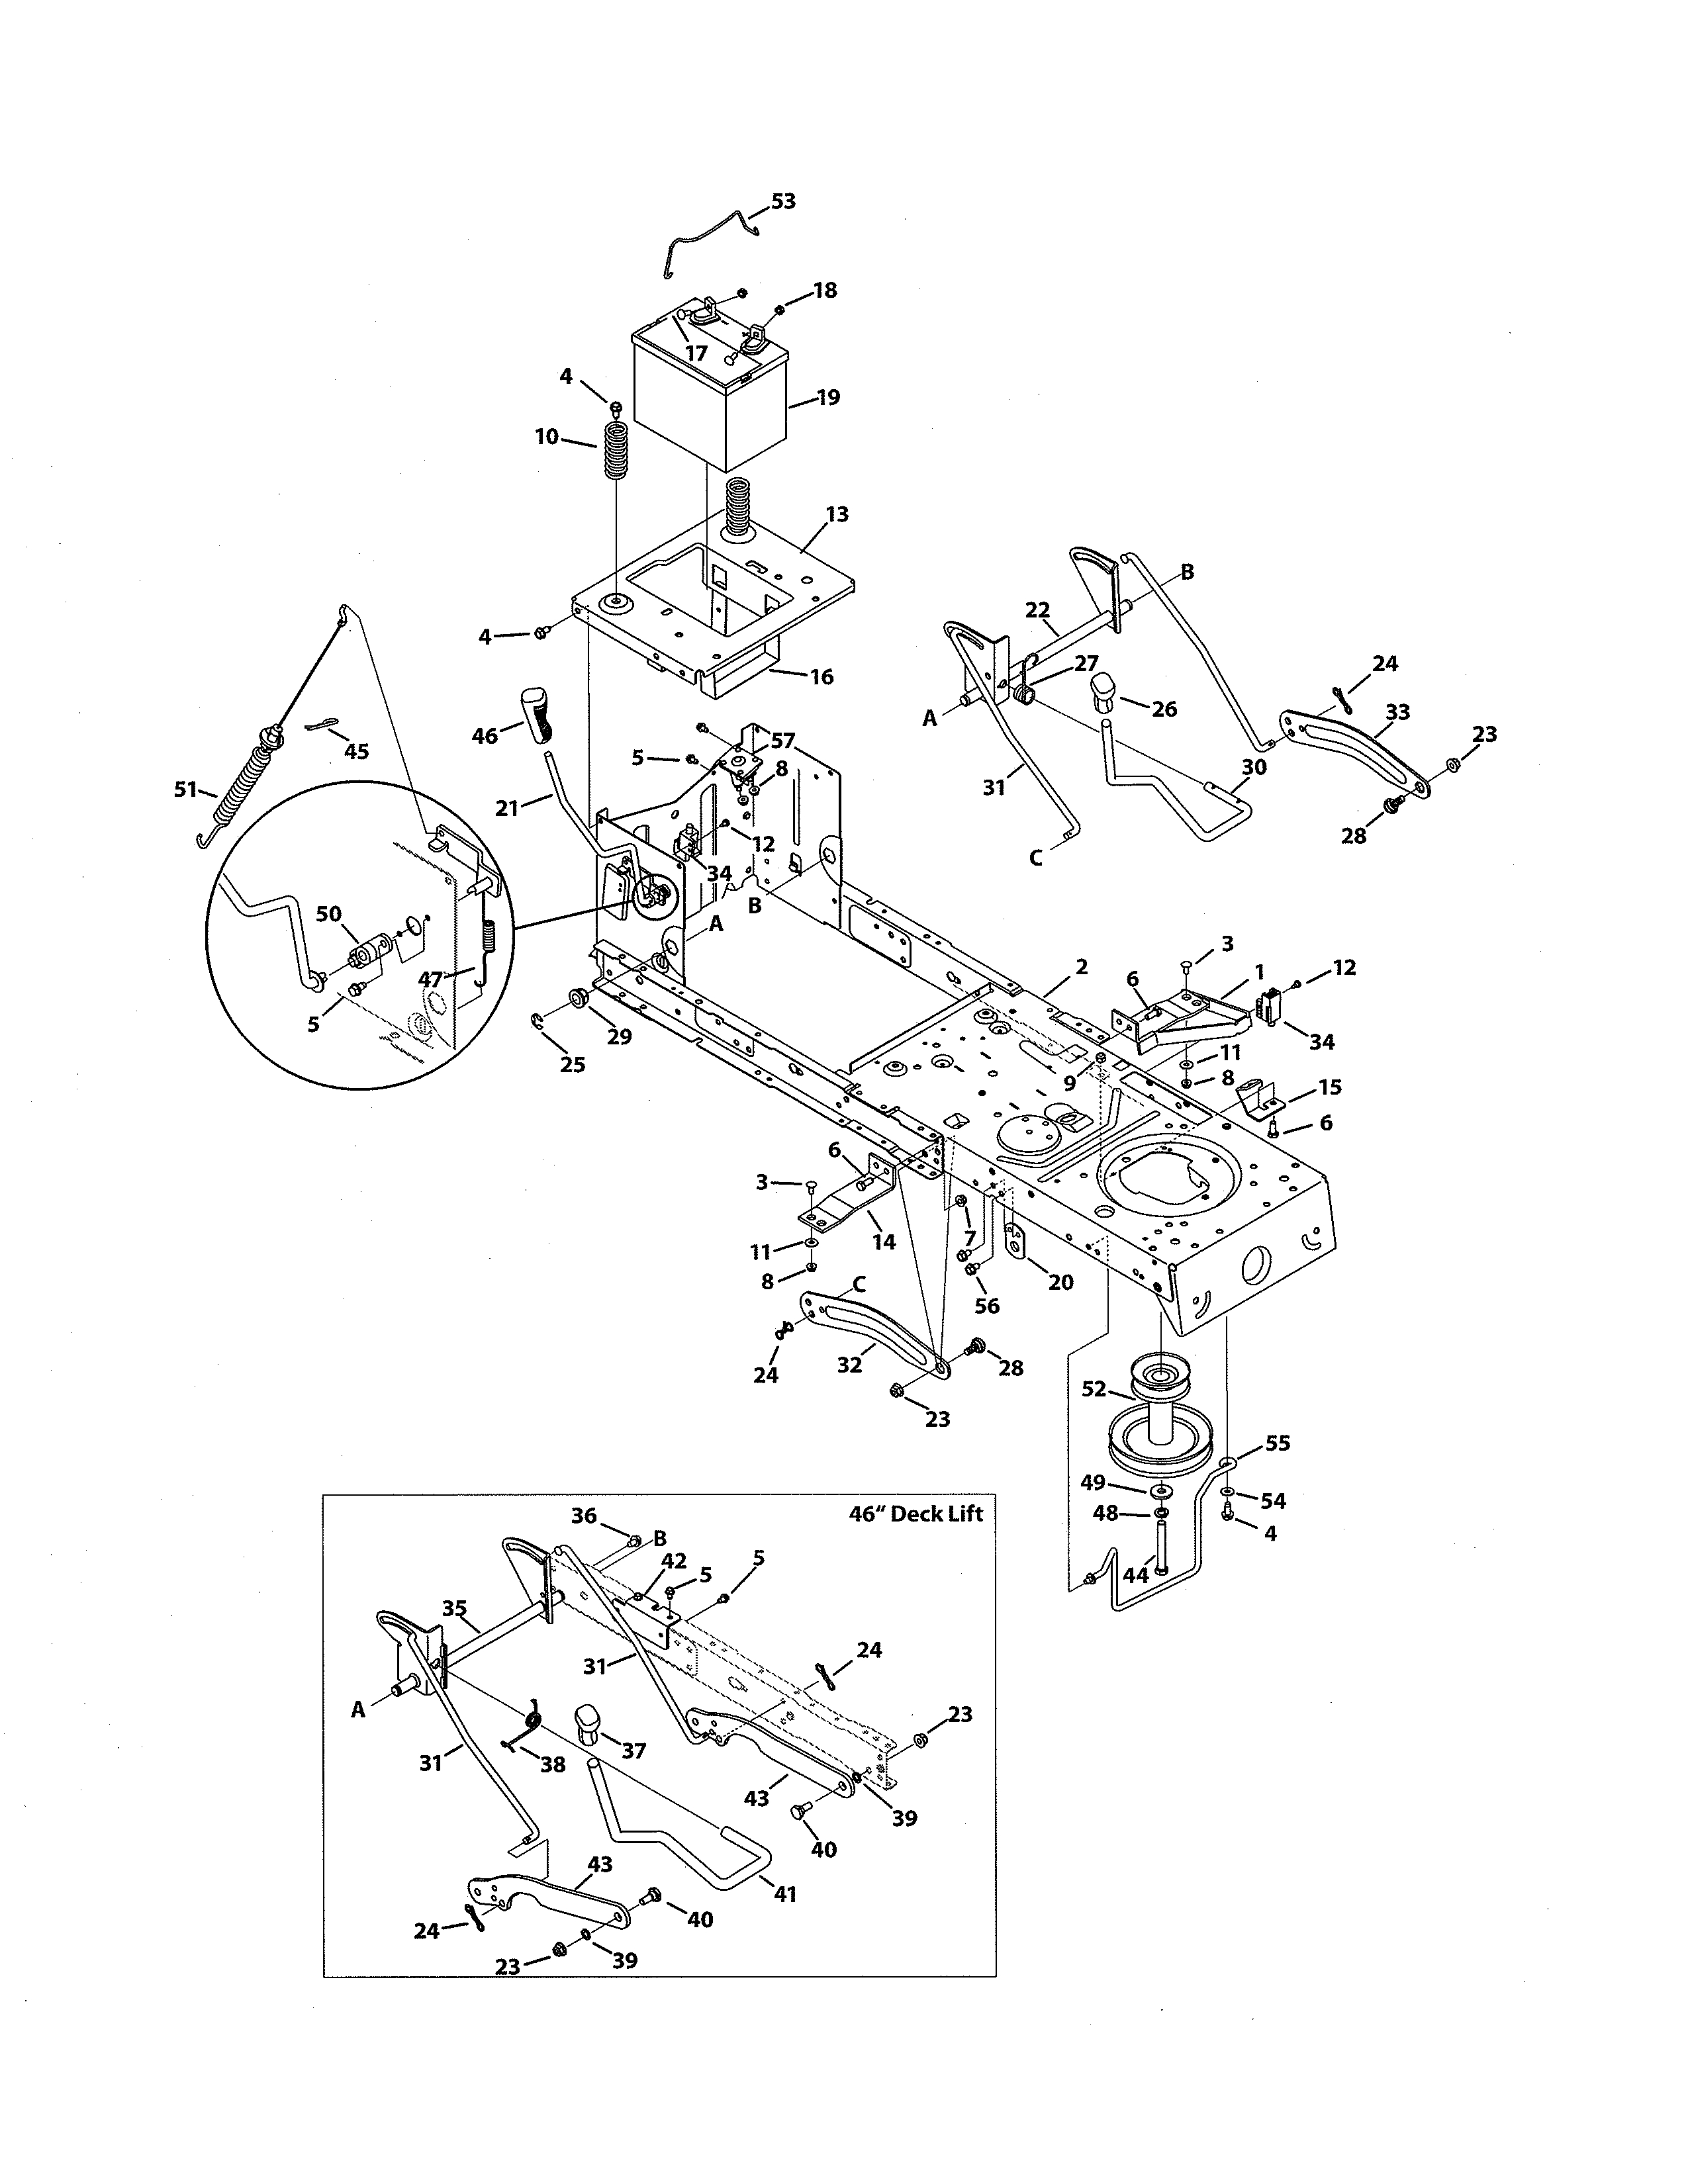 Huskee Lawn Mower Parts Diagram Mtd Drive Belt Diagram Repair Manual